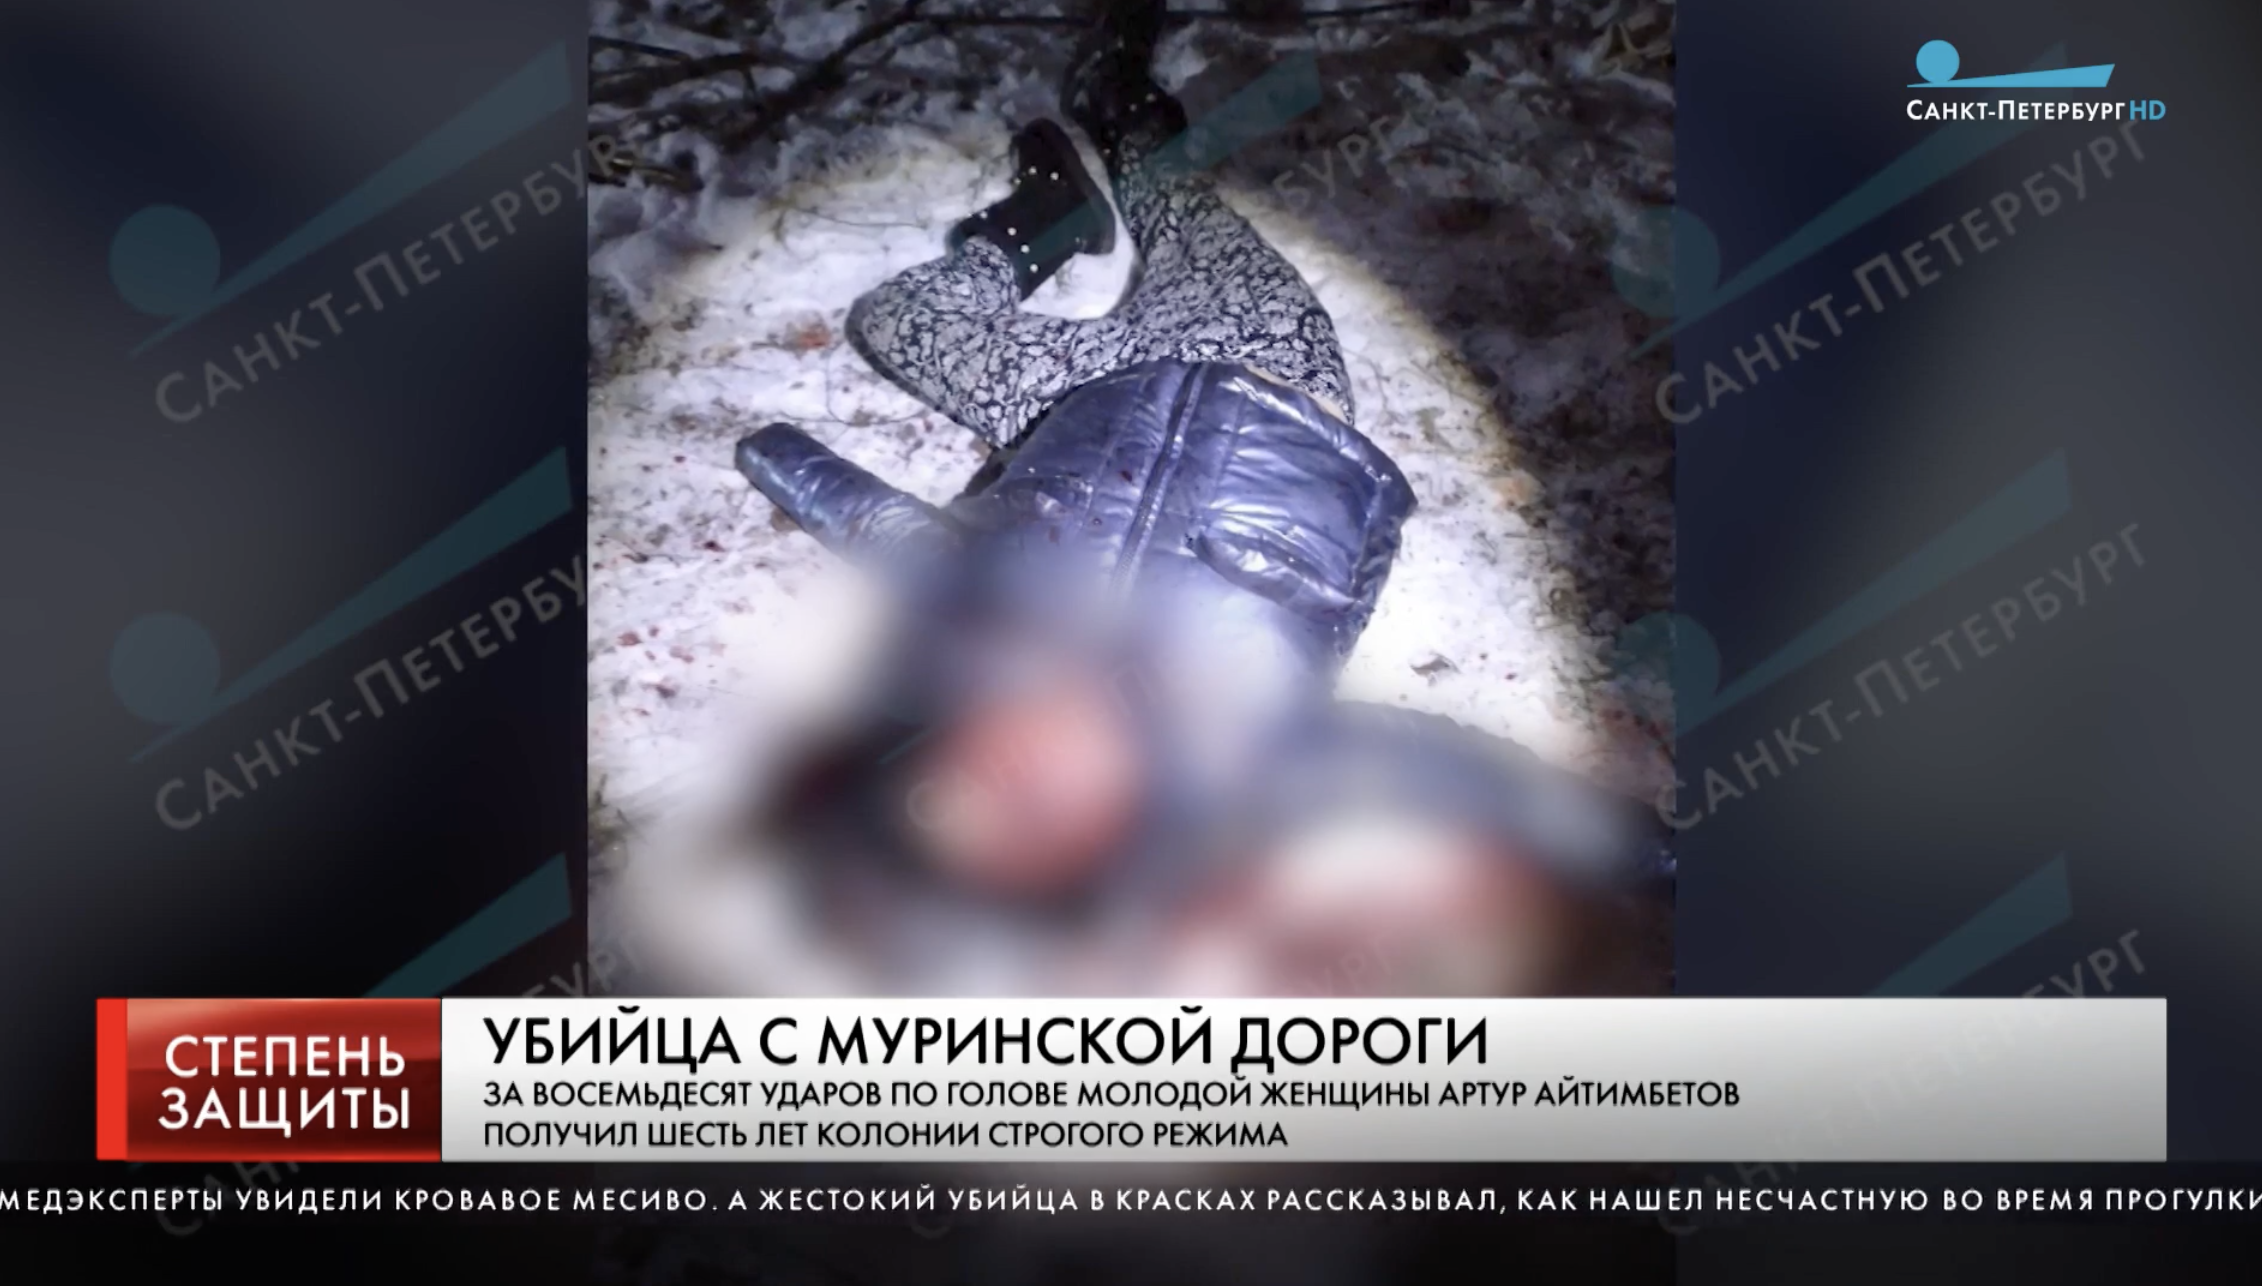 6 лет получил мигрант, который насмерть ногами забил женщину в Петербурге за отказ познакомиться г,Санкт-Петербург [1414662],россия